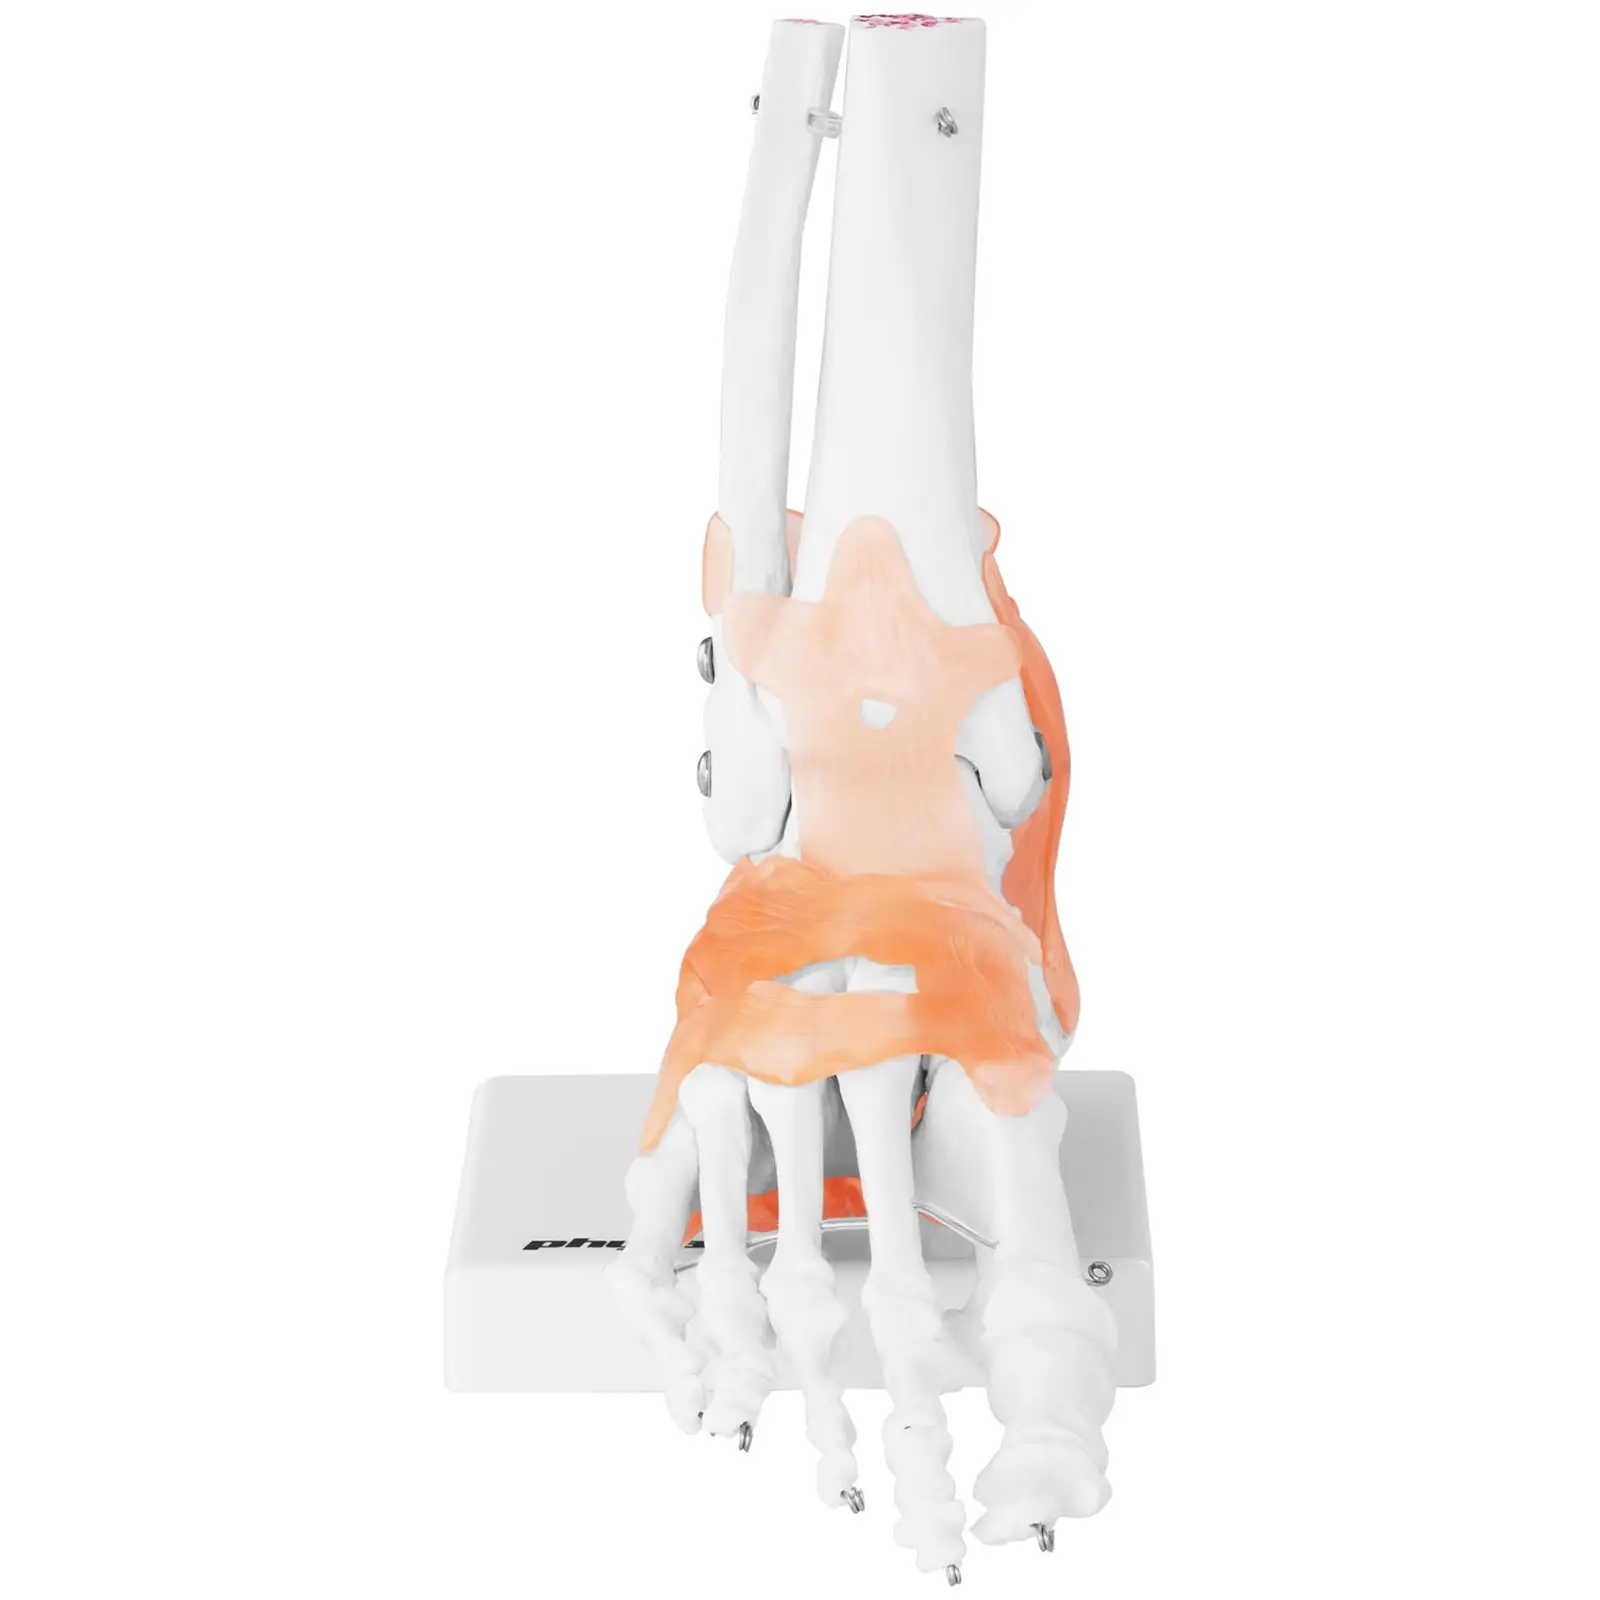 Maquette anatomique pied humain - avec ligaments et articulations